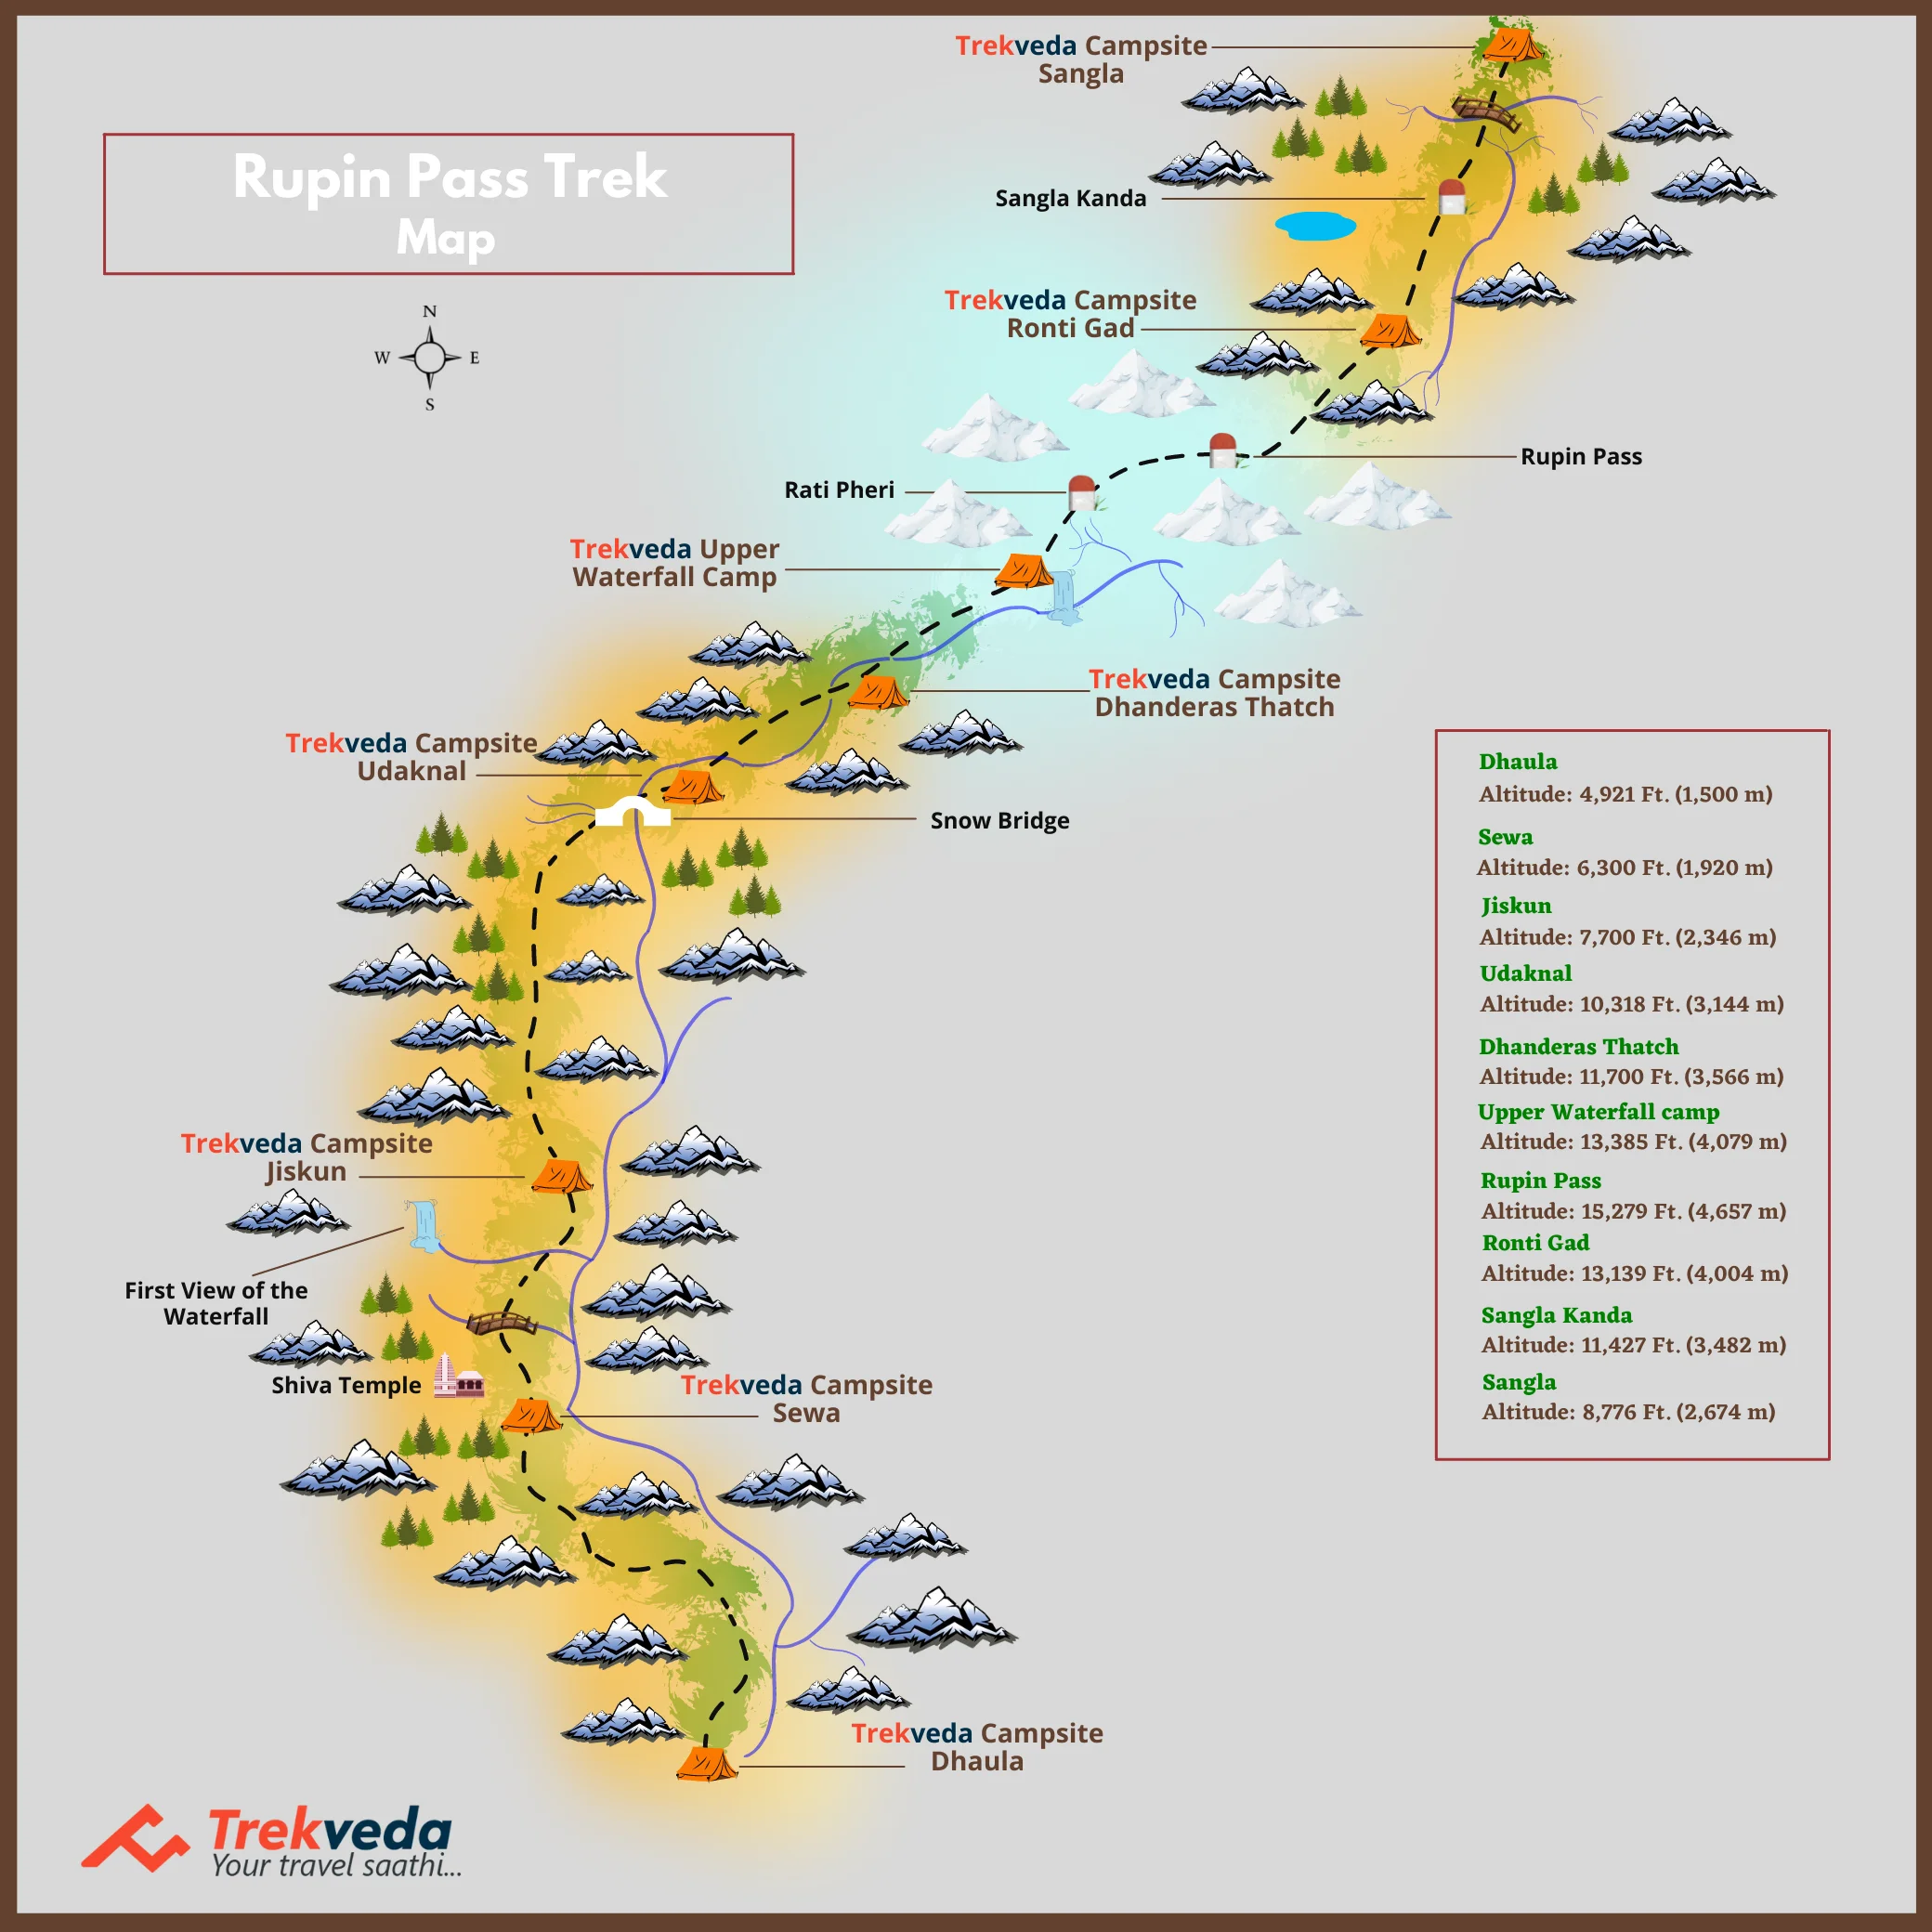 Rupin Pass Trek Map